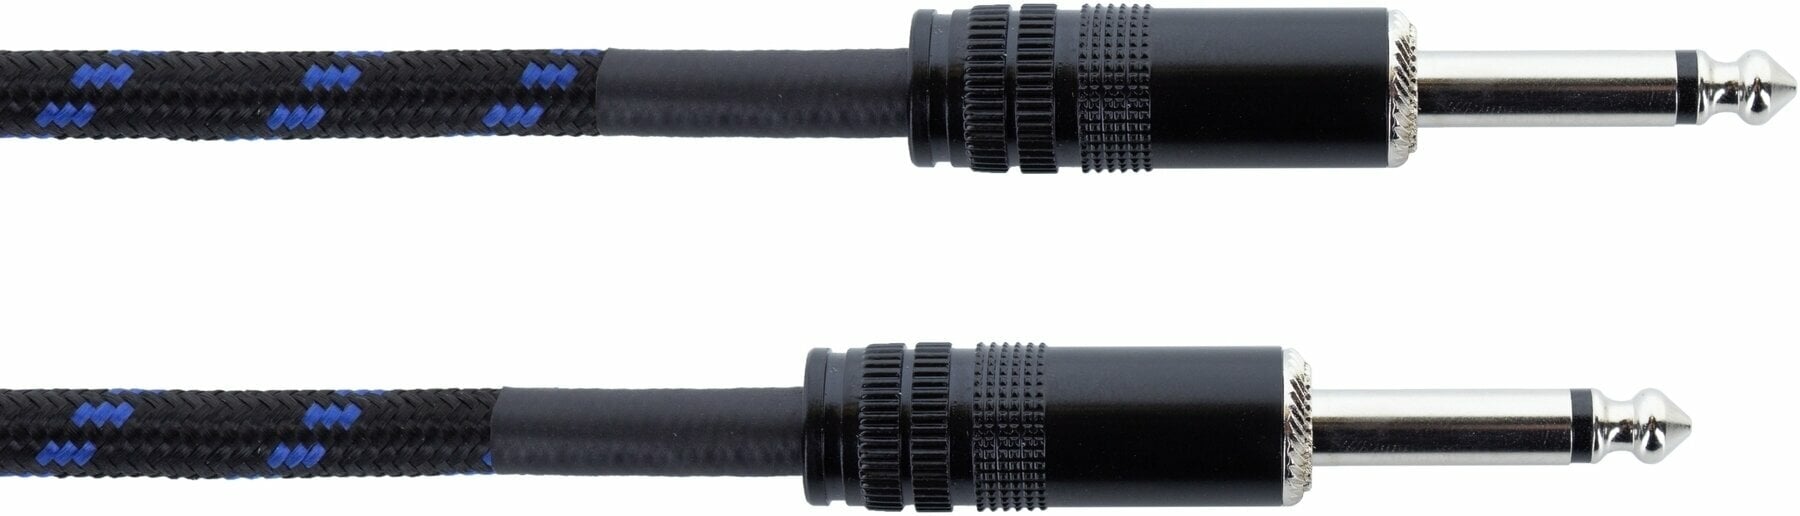 Nástrojový kabel Cordial EI 1,5 PP-TWEED-BL Modrá 1,5 m Rovný - Rovný